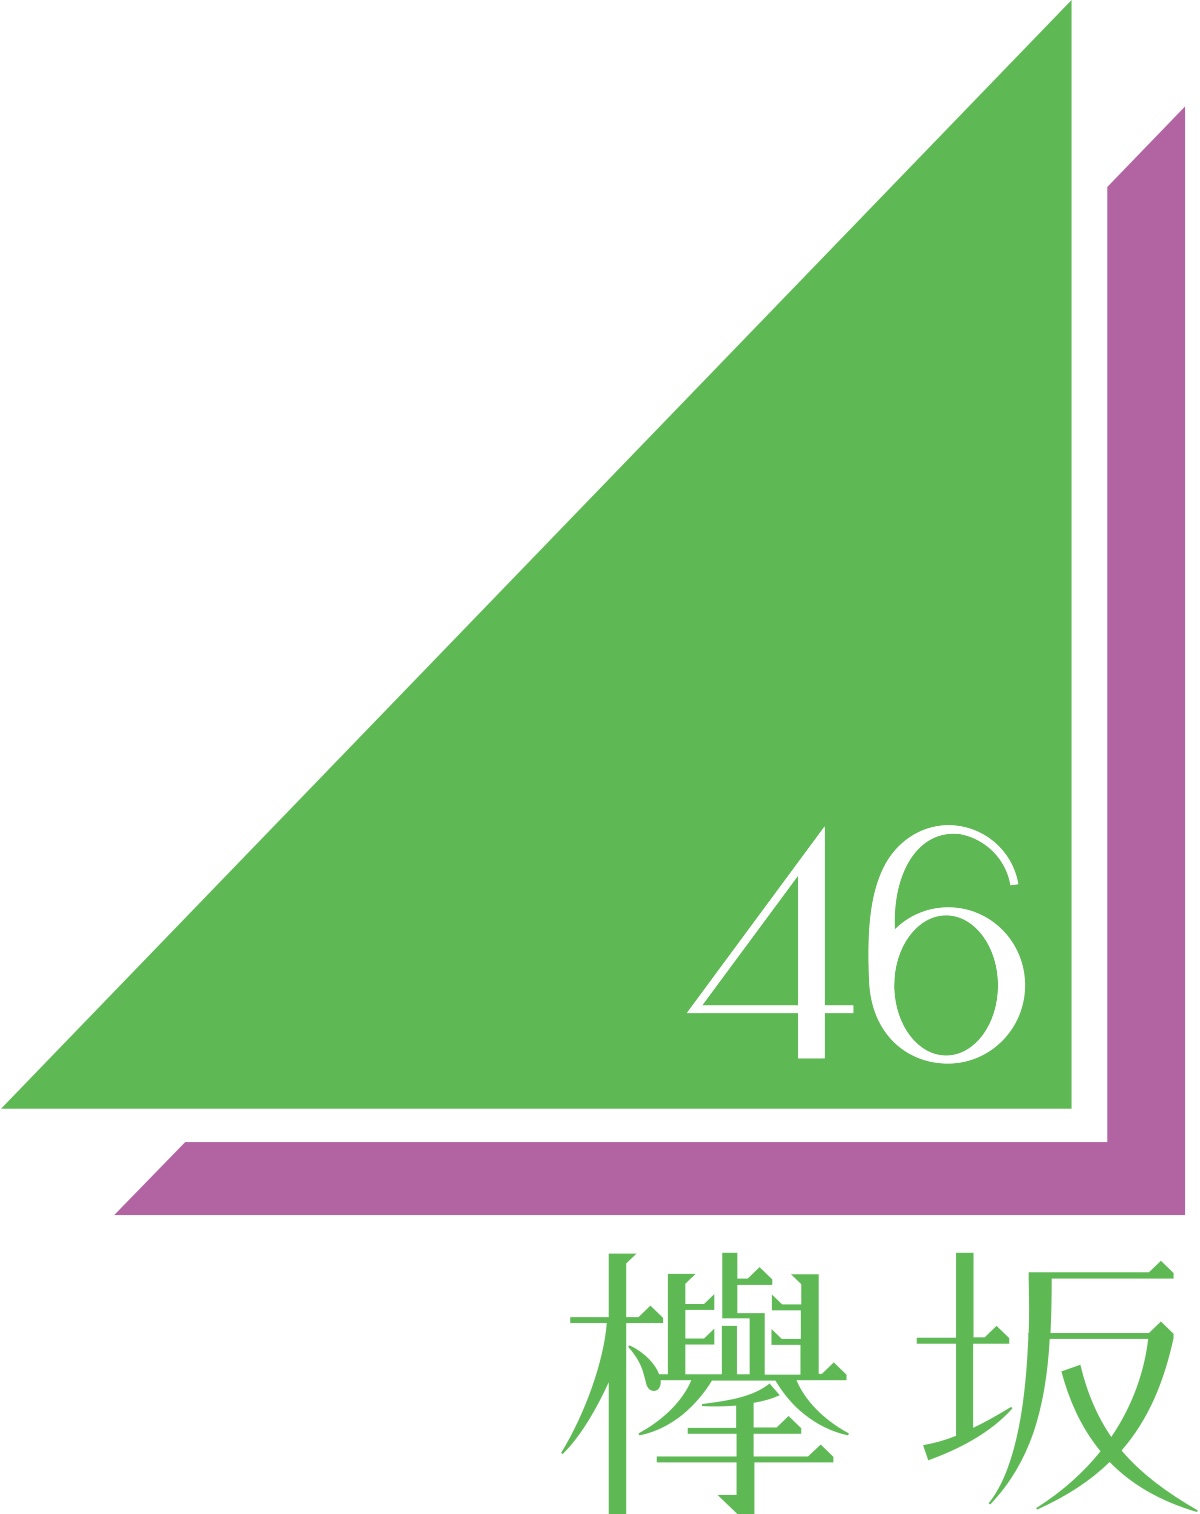 欅 坂 46 まとめ 平手